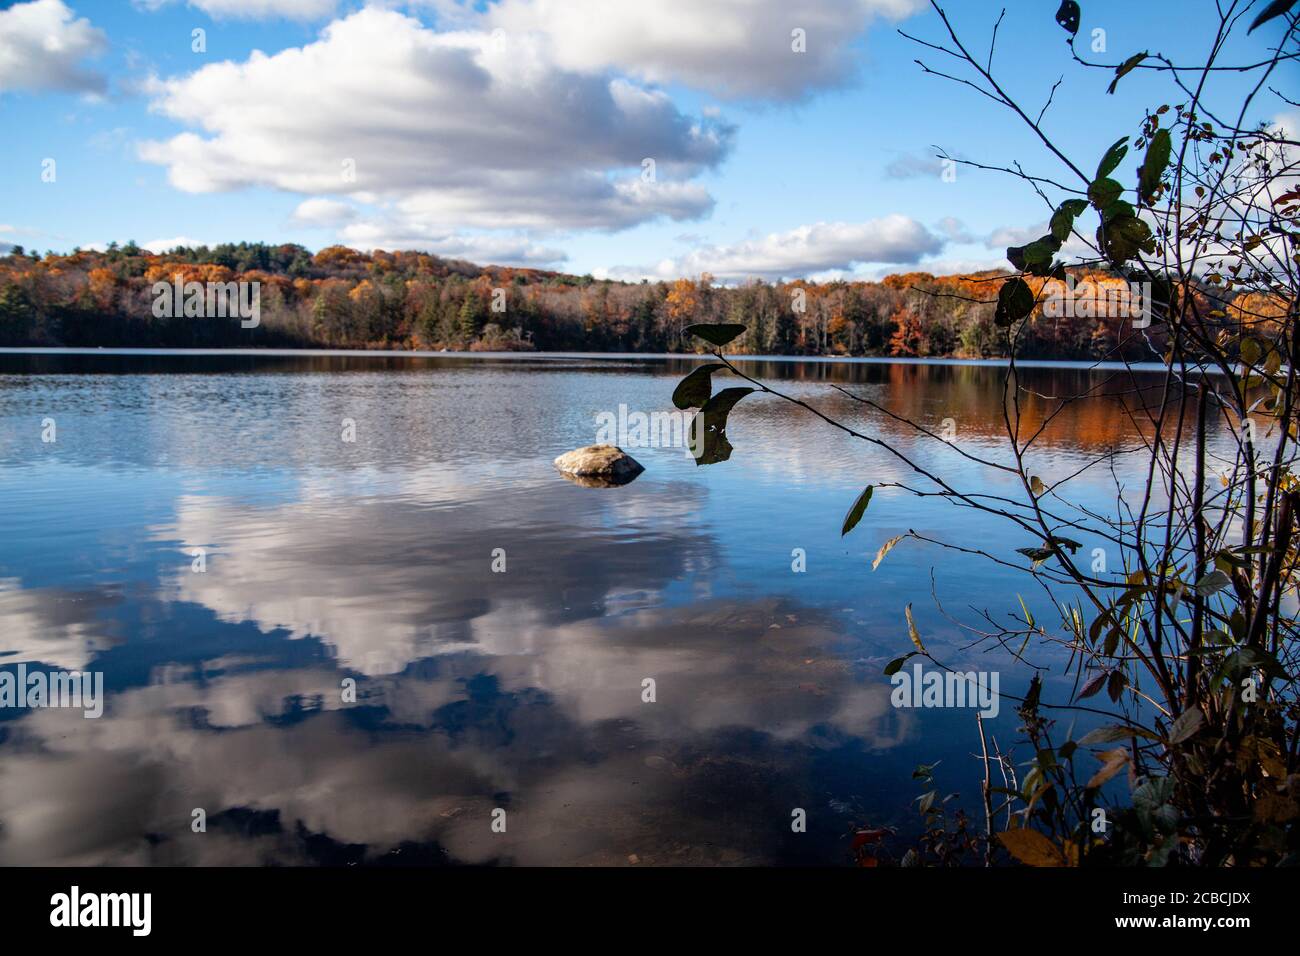 Das gewellte Wasser des Sees reflektiert den blauen Himmel Und weiße Wolken und der Herbstwald ist sichtbar in Die Entfernung während eines sonnigen hellen Tages Stockfoto